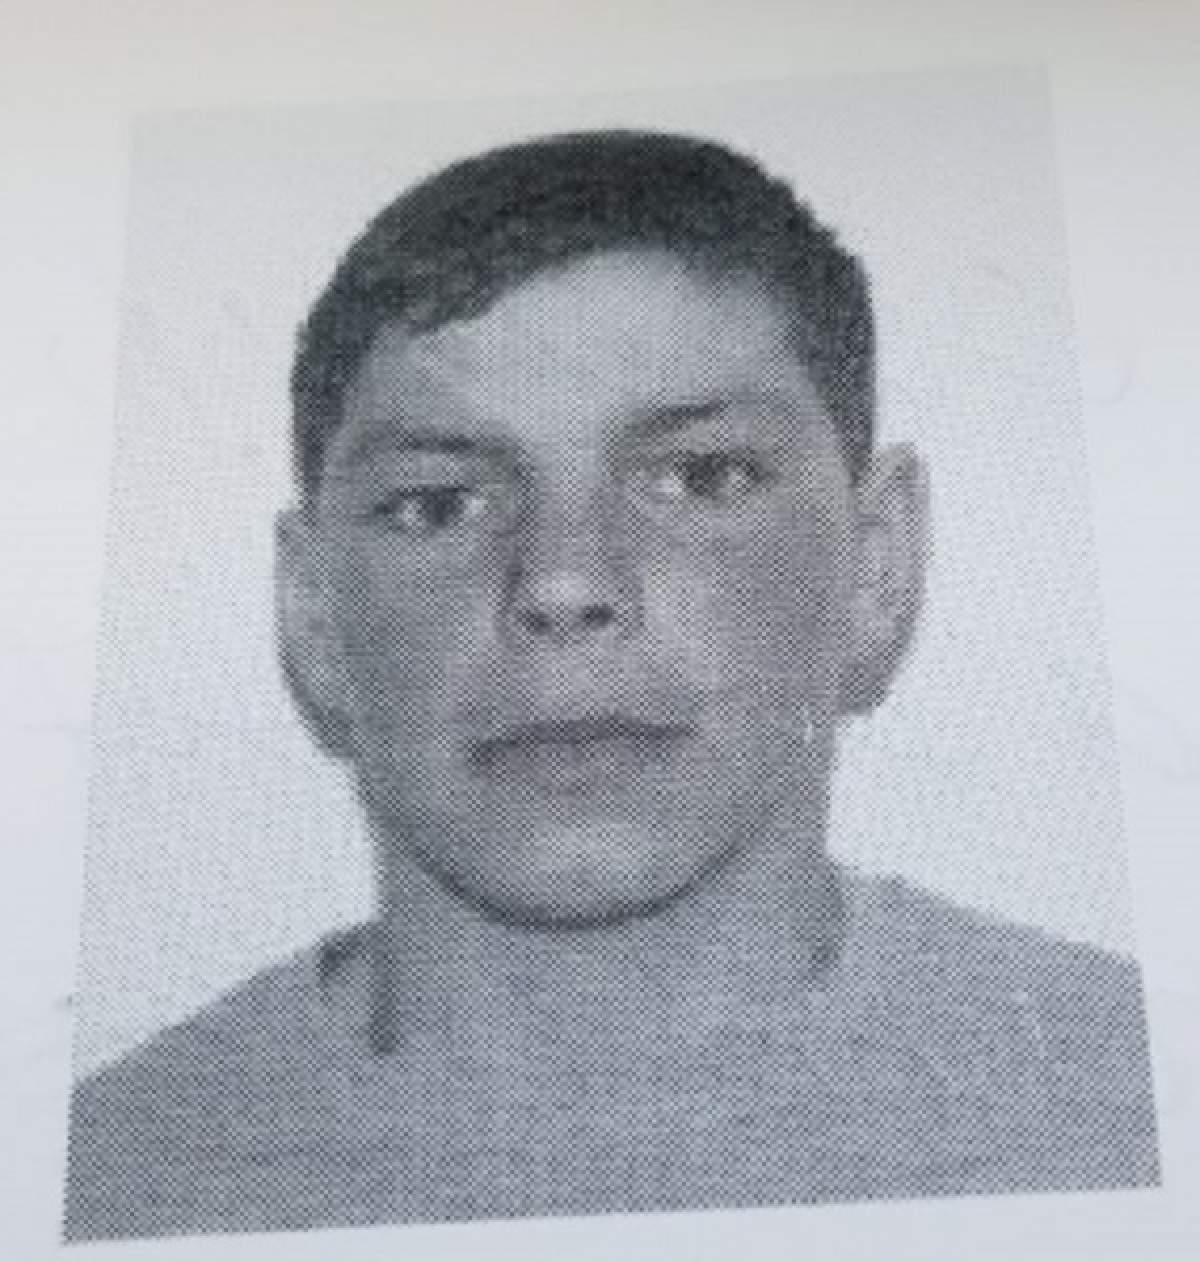 Băiatul de 14 ani din Vaslui, dat dispărut, a fost găsit mort. Petrişor ar fi fost ucis!